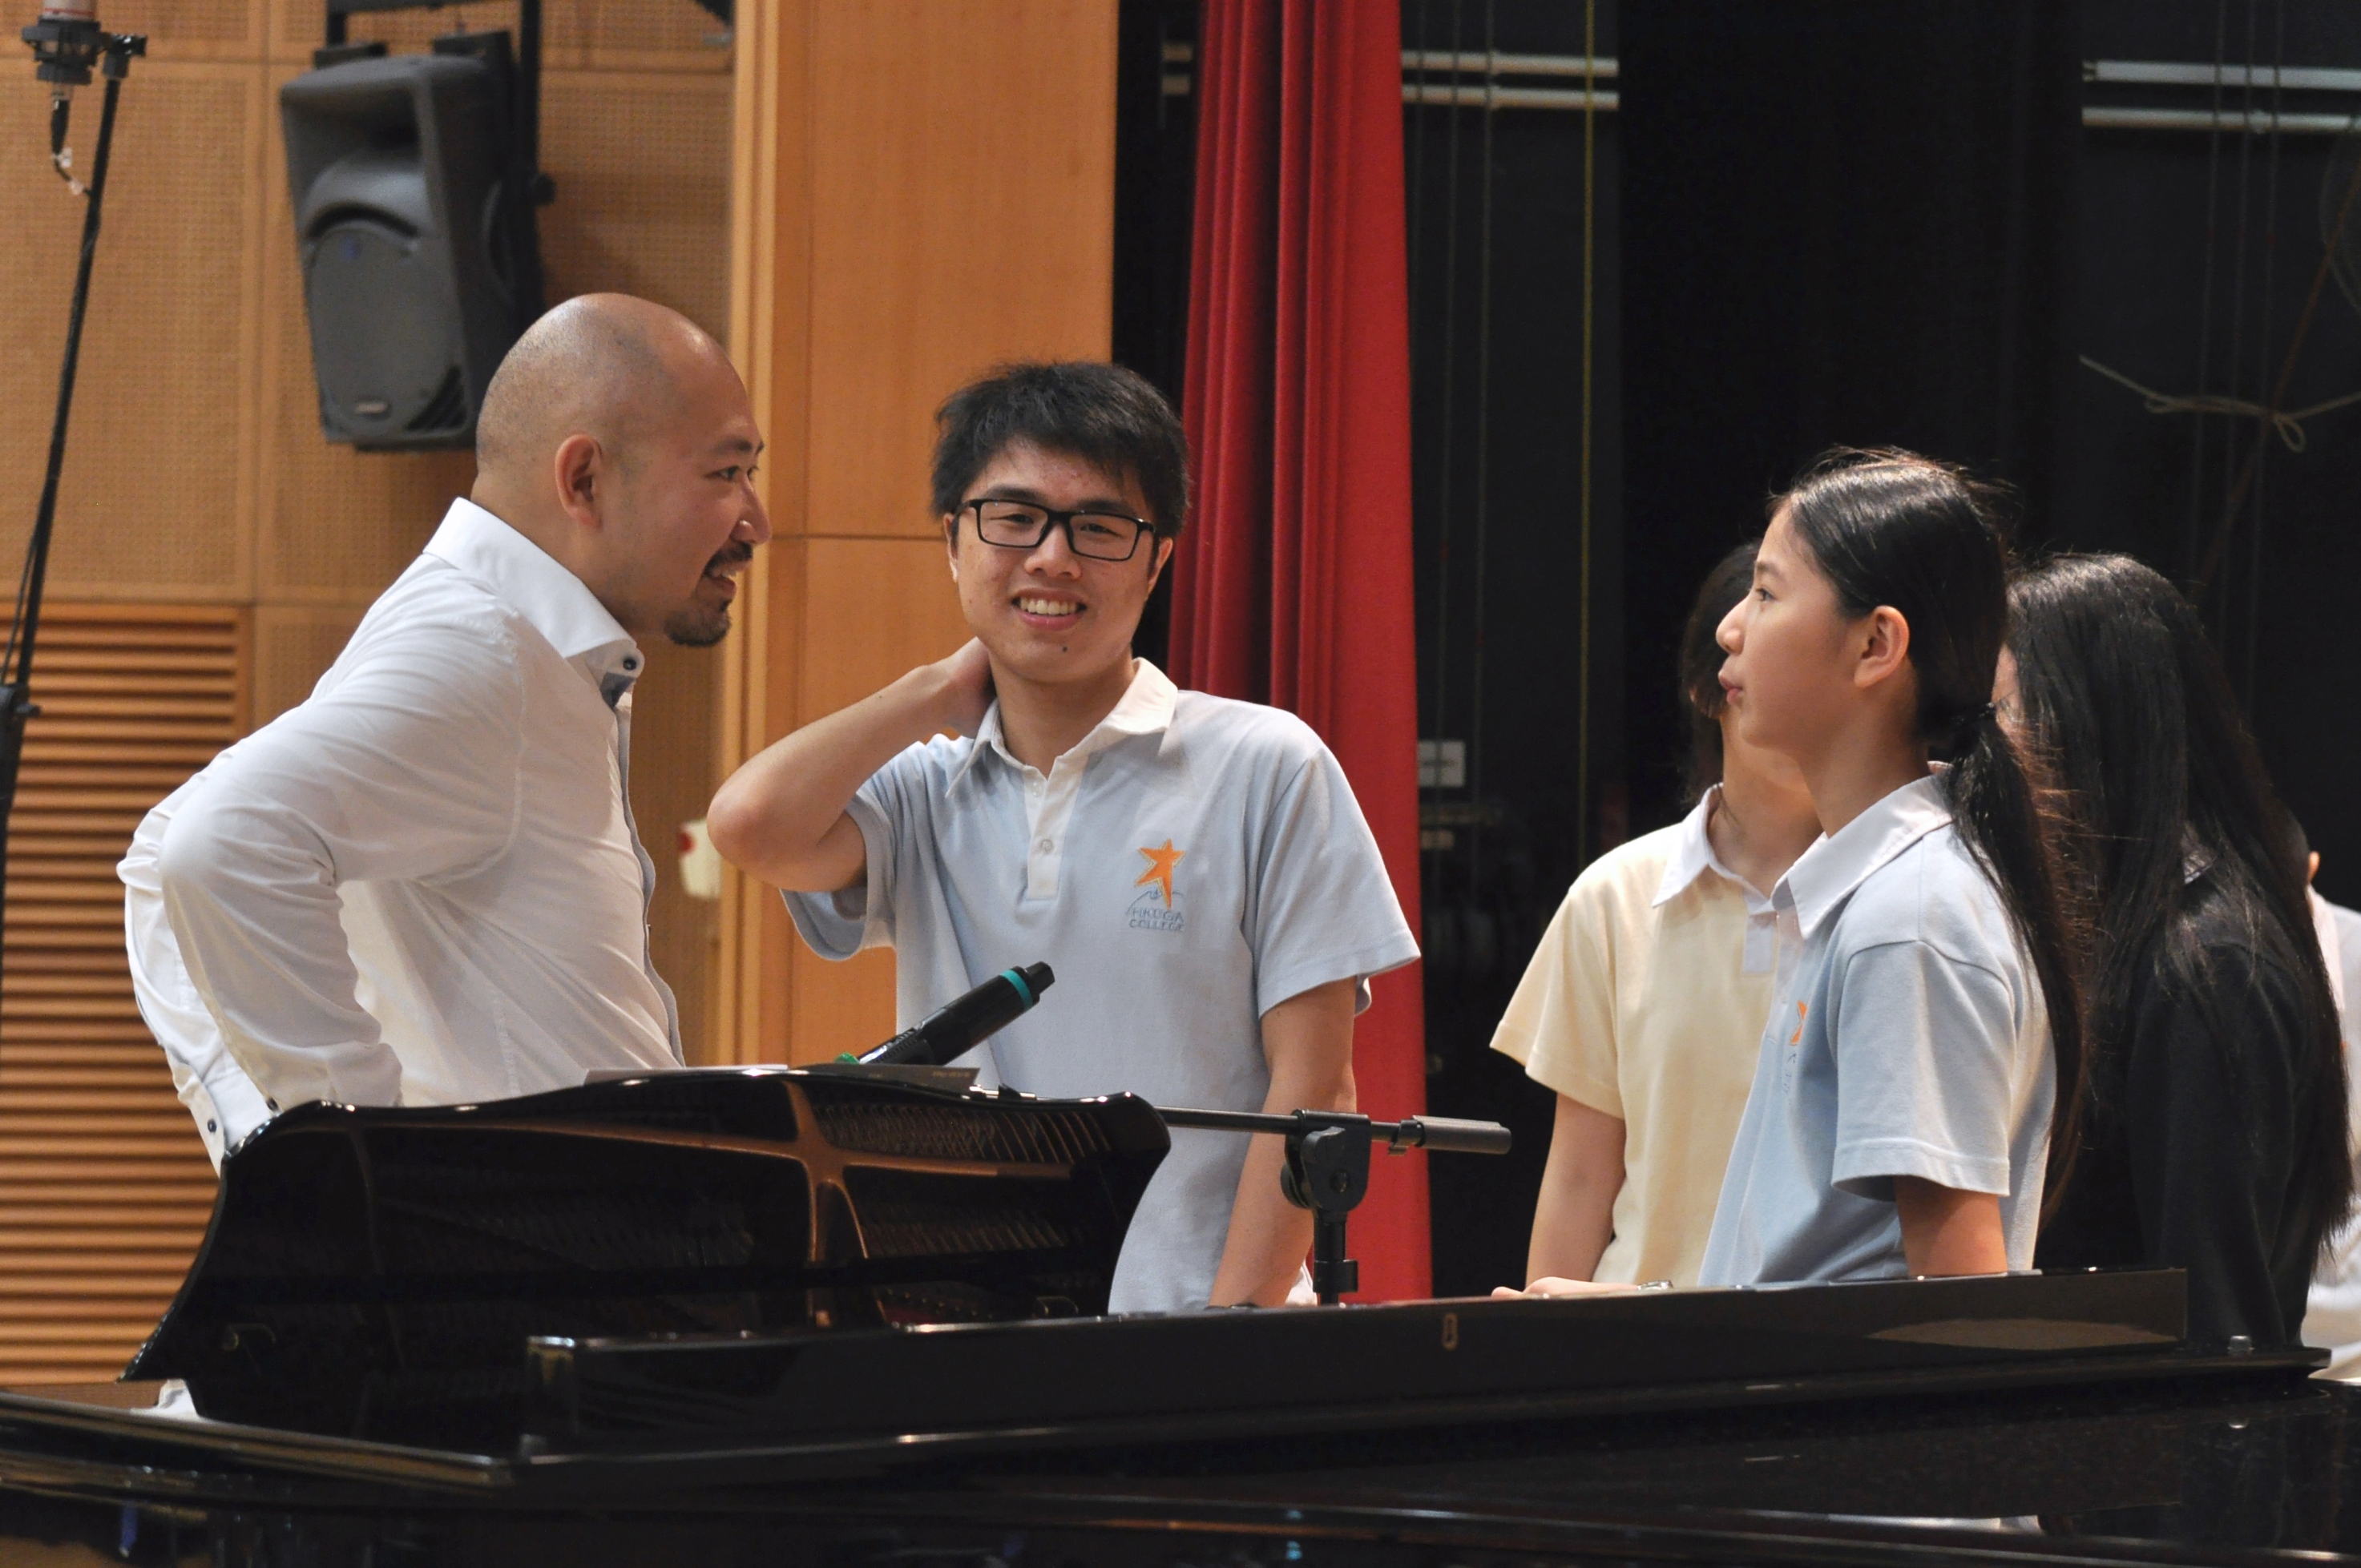 同學們向曾先生請教歌唱技巧